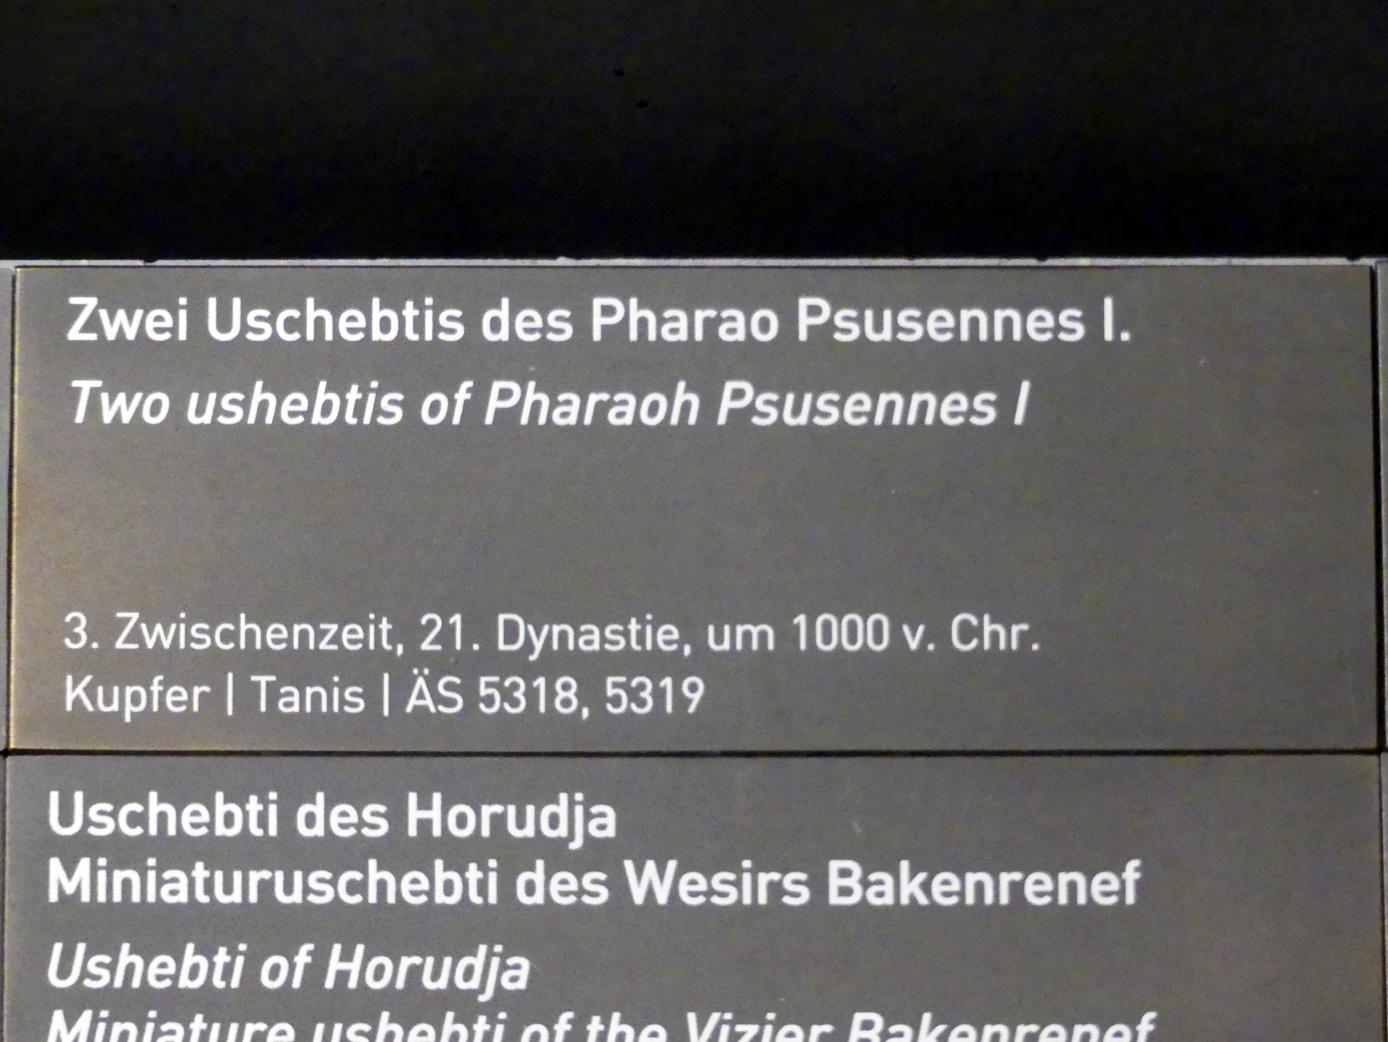 Zwei Uschebtis des Pharao Psusennes I., 21. Dynastie, Undatiert, 1000 v. Chr., Bild 2/2